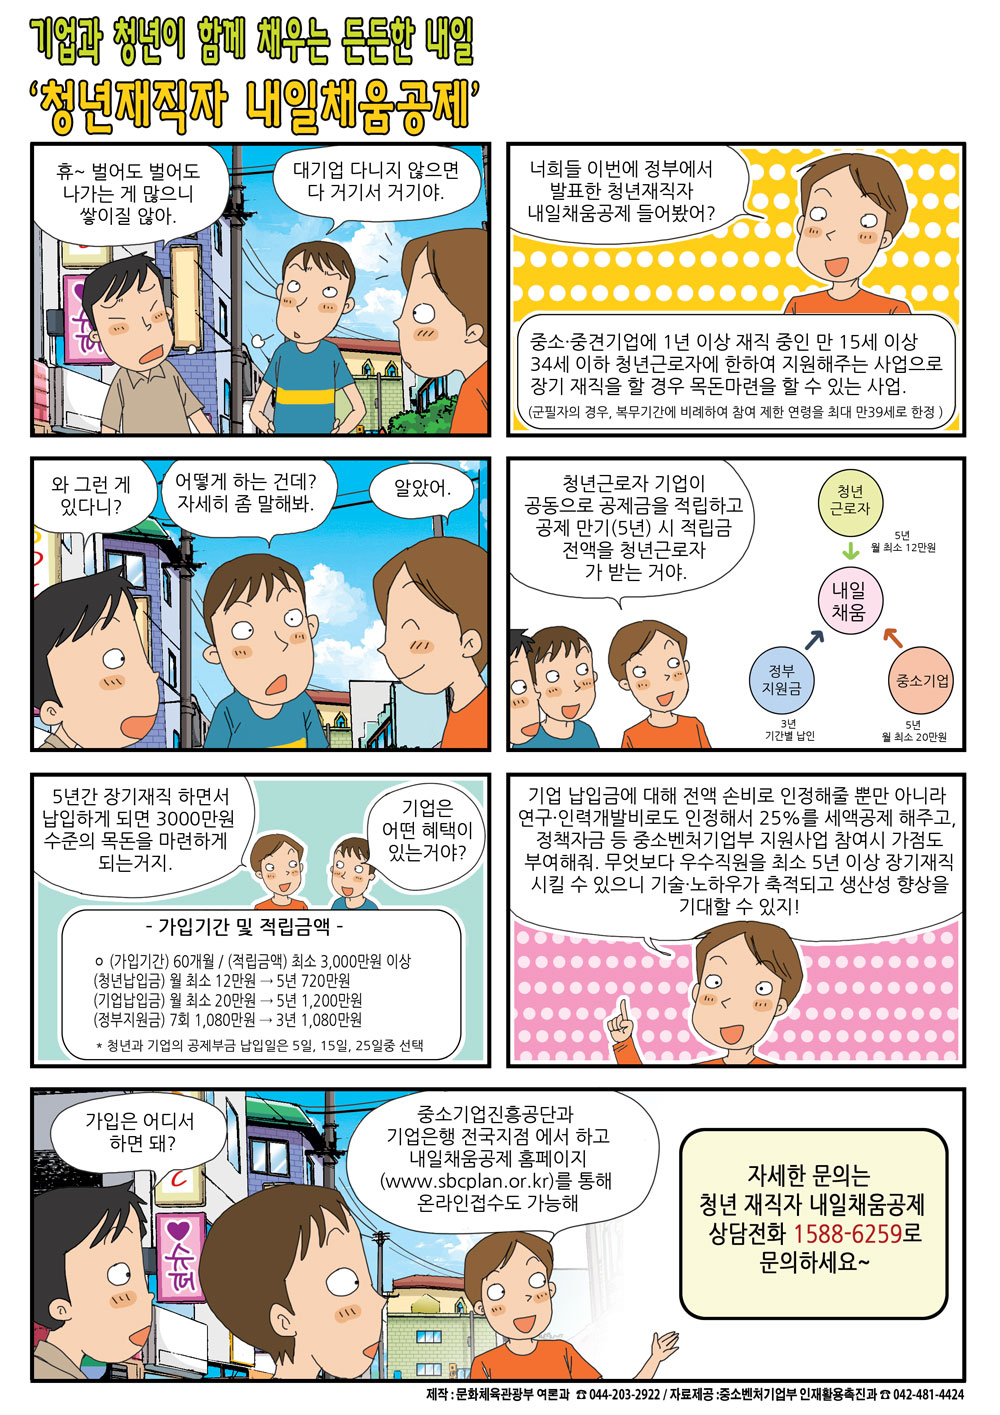 [2018. 7월 정책만화] 청년재직자 내일채움공제